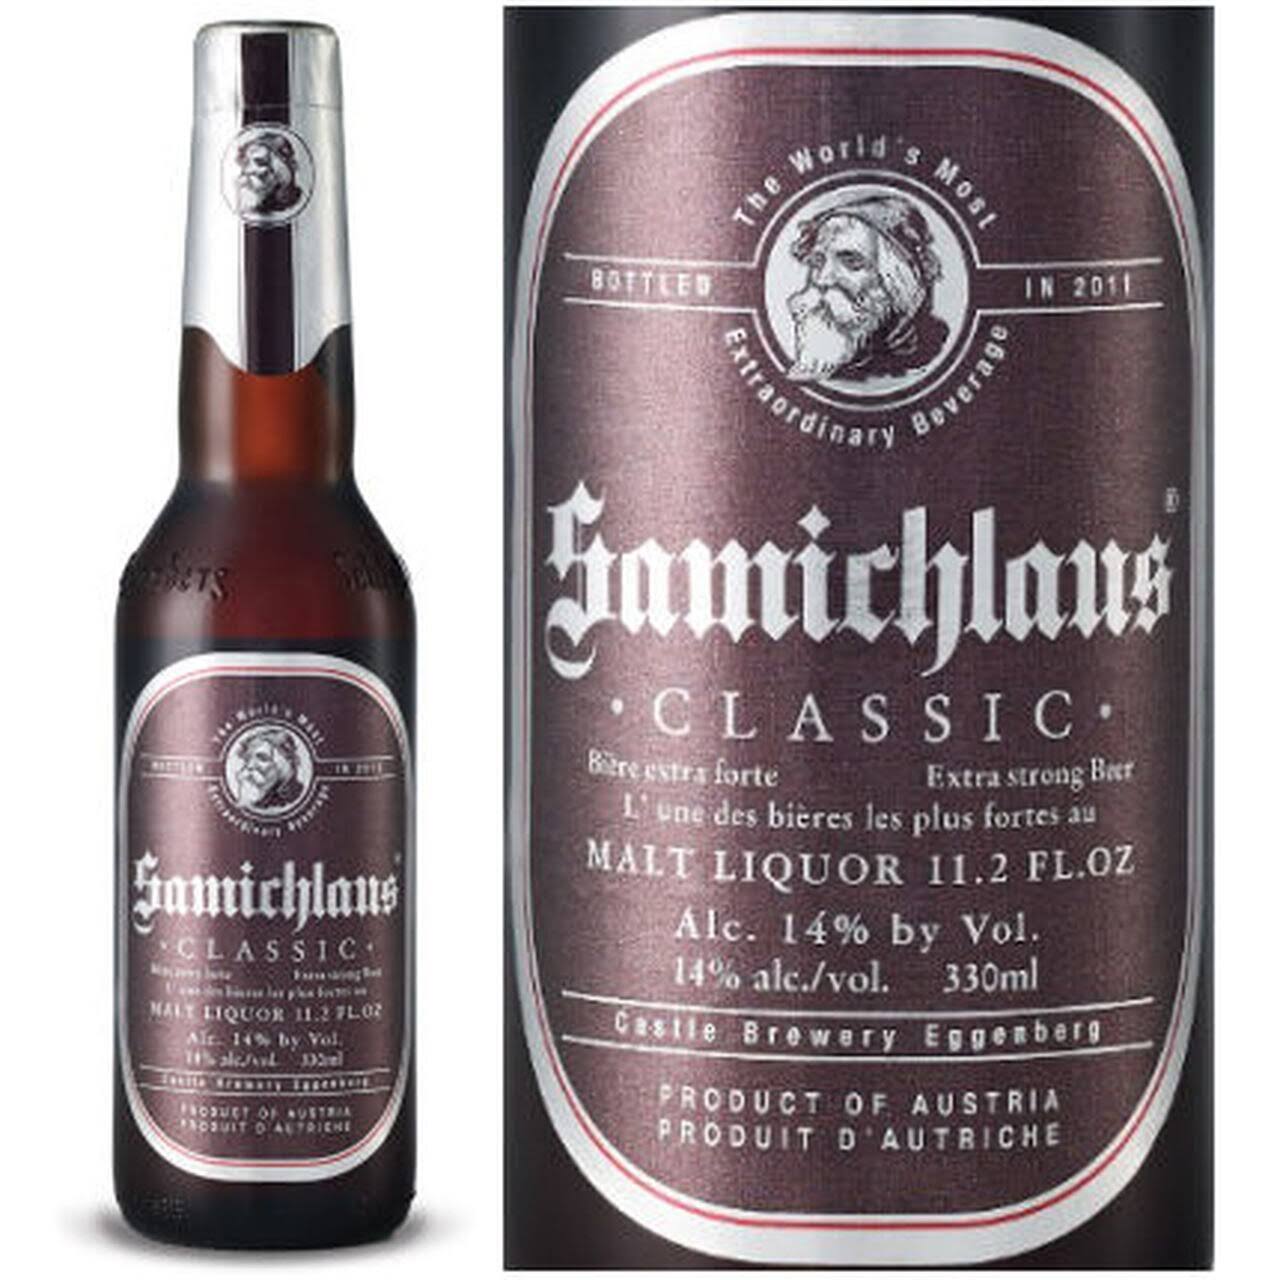 Samichlaus Classic Malt Liquor - 11.2 fl oz bottle